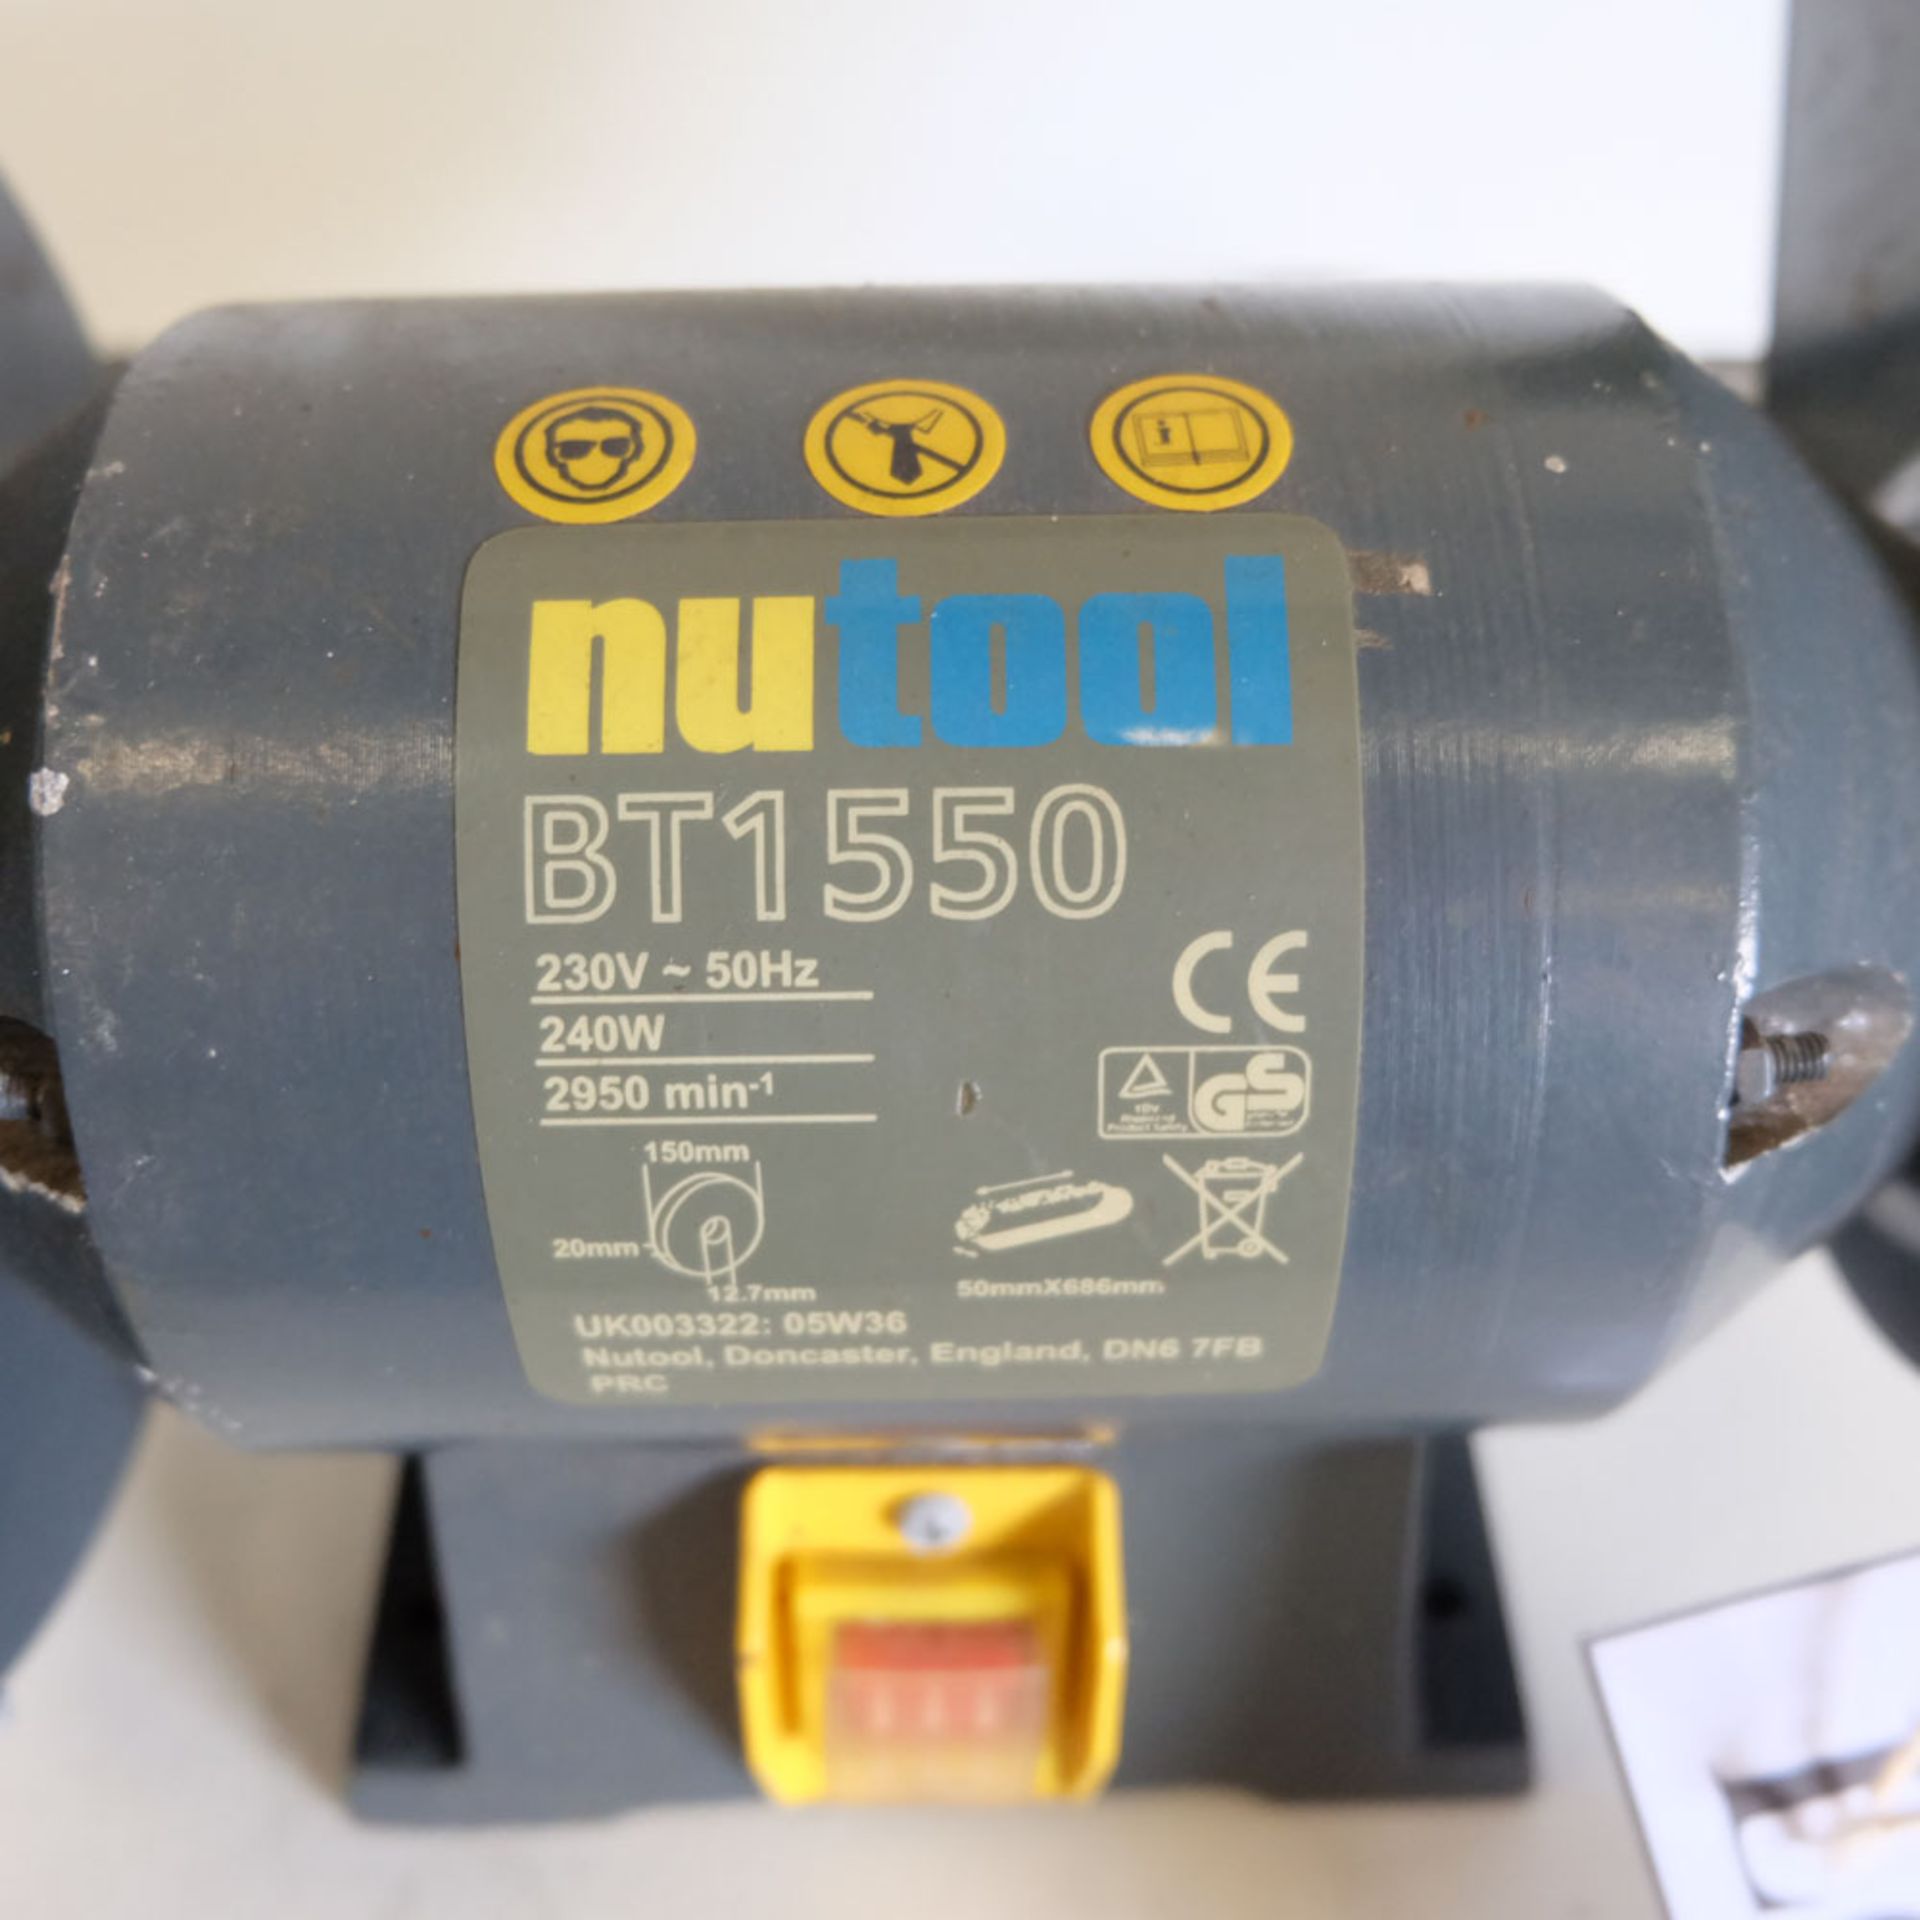 Nutool Model BT1550 Tool Grinder & Belt Linisher. - Image 2 of 4